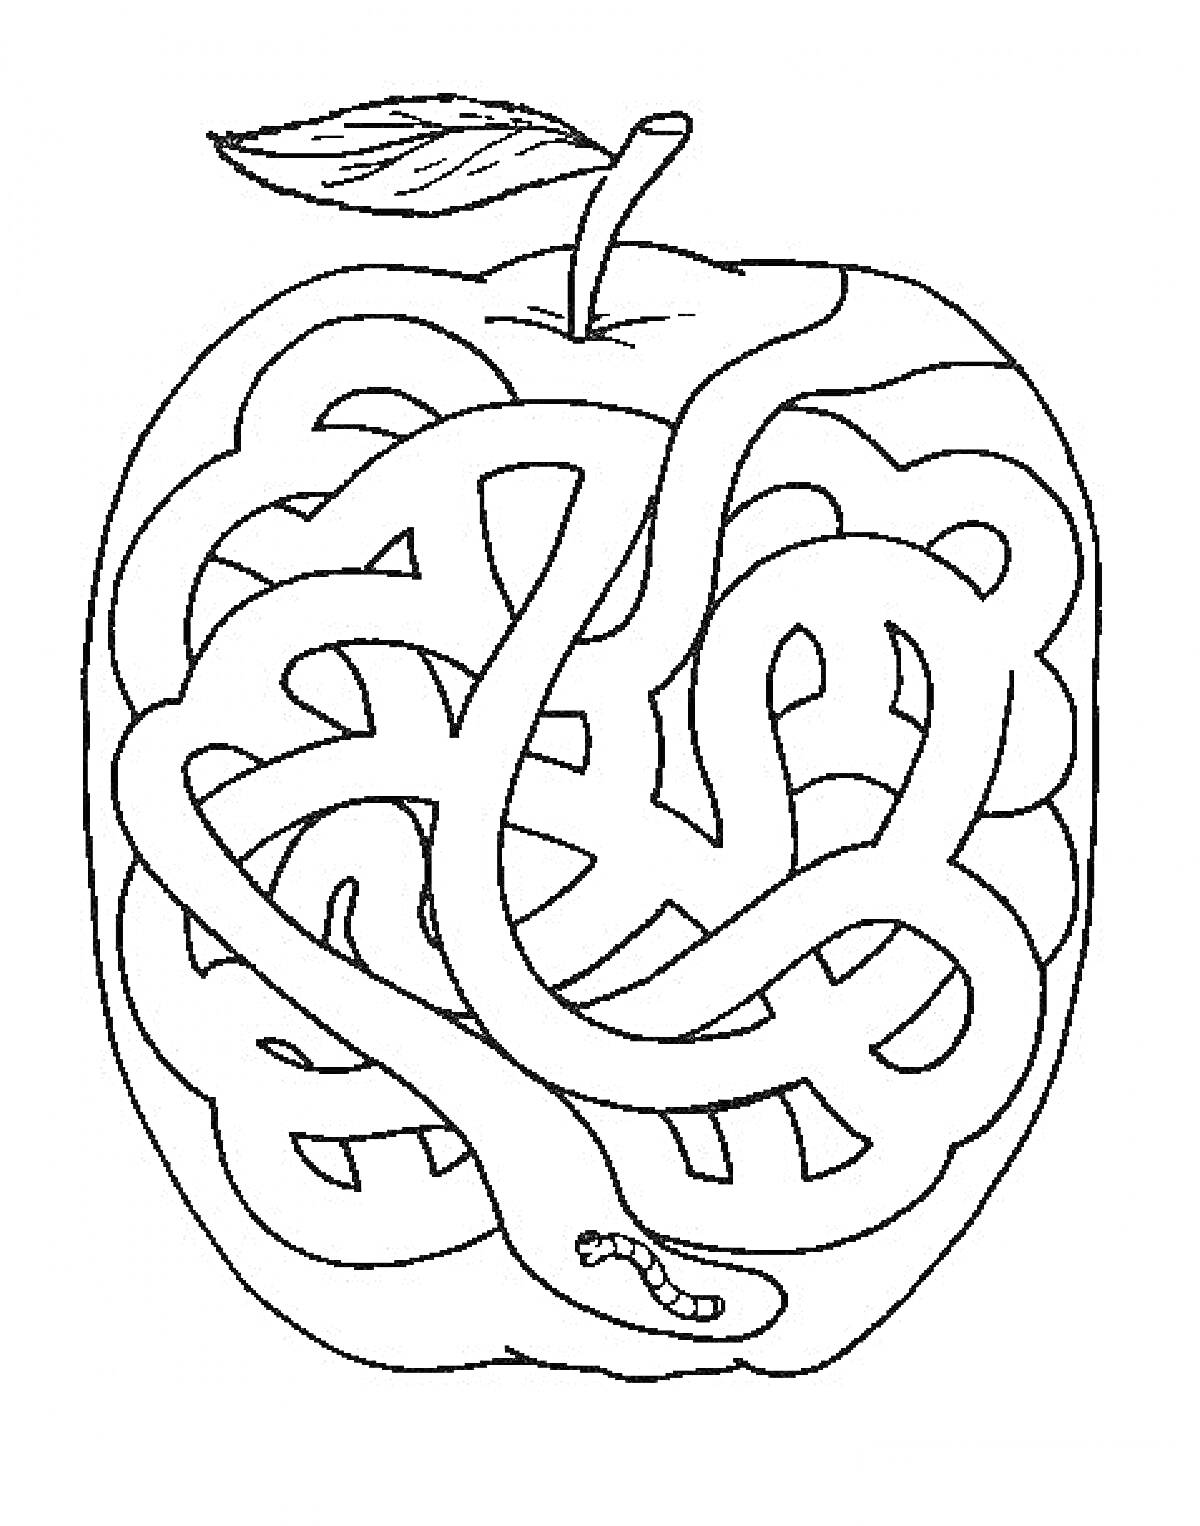 Раскраска Лабиринт в форме яблока с червяком внутри